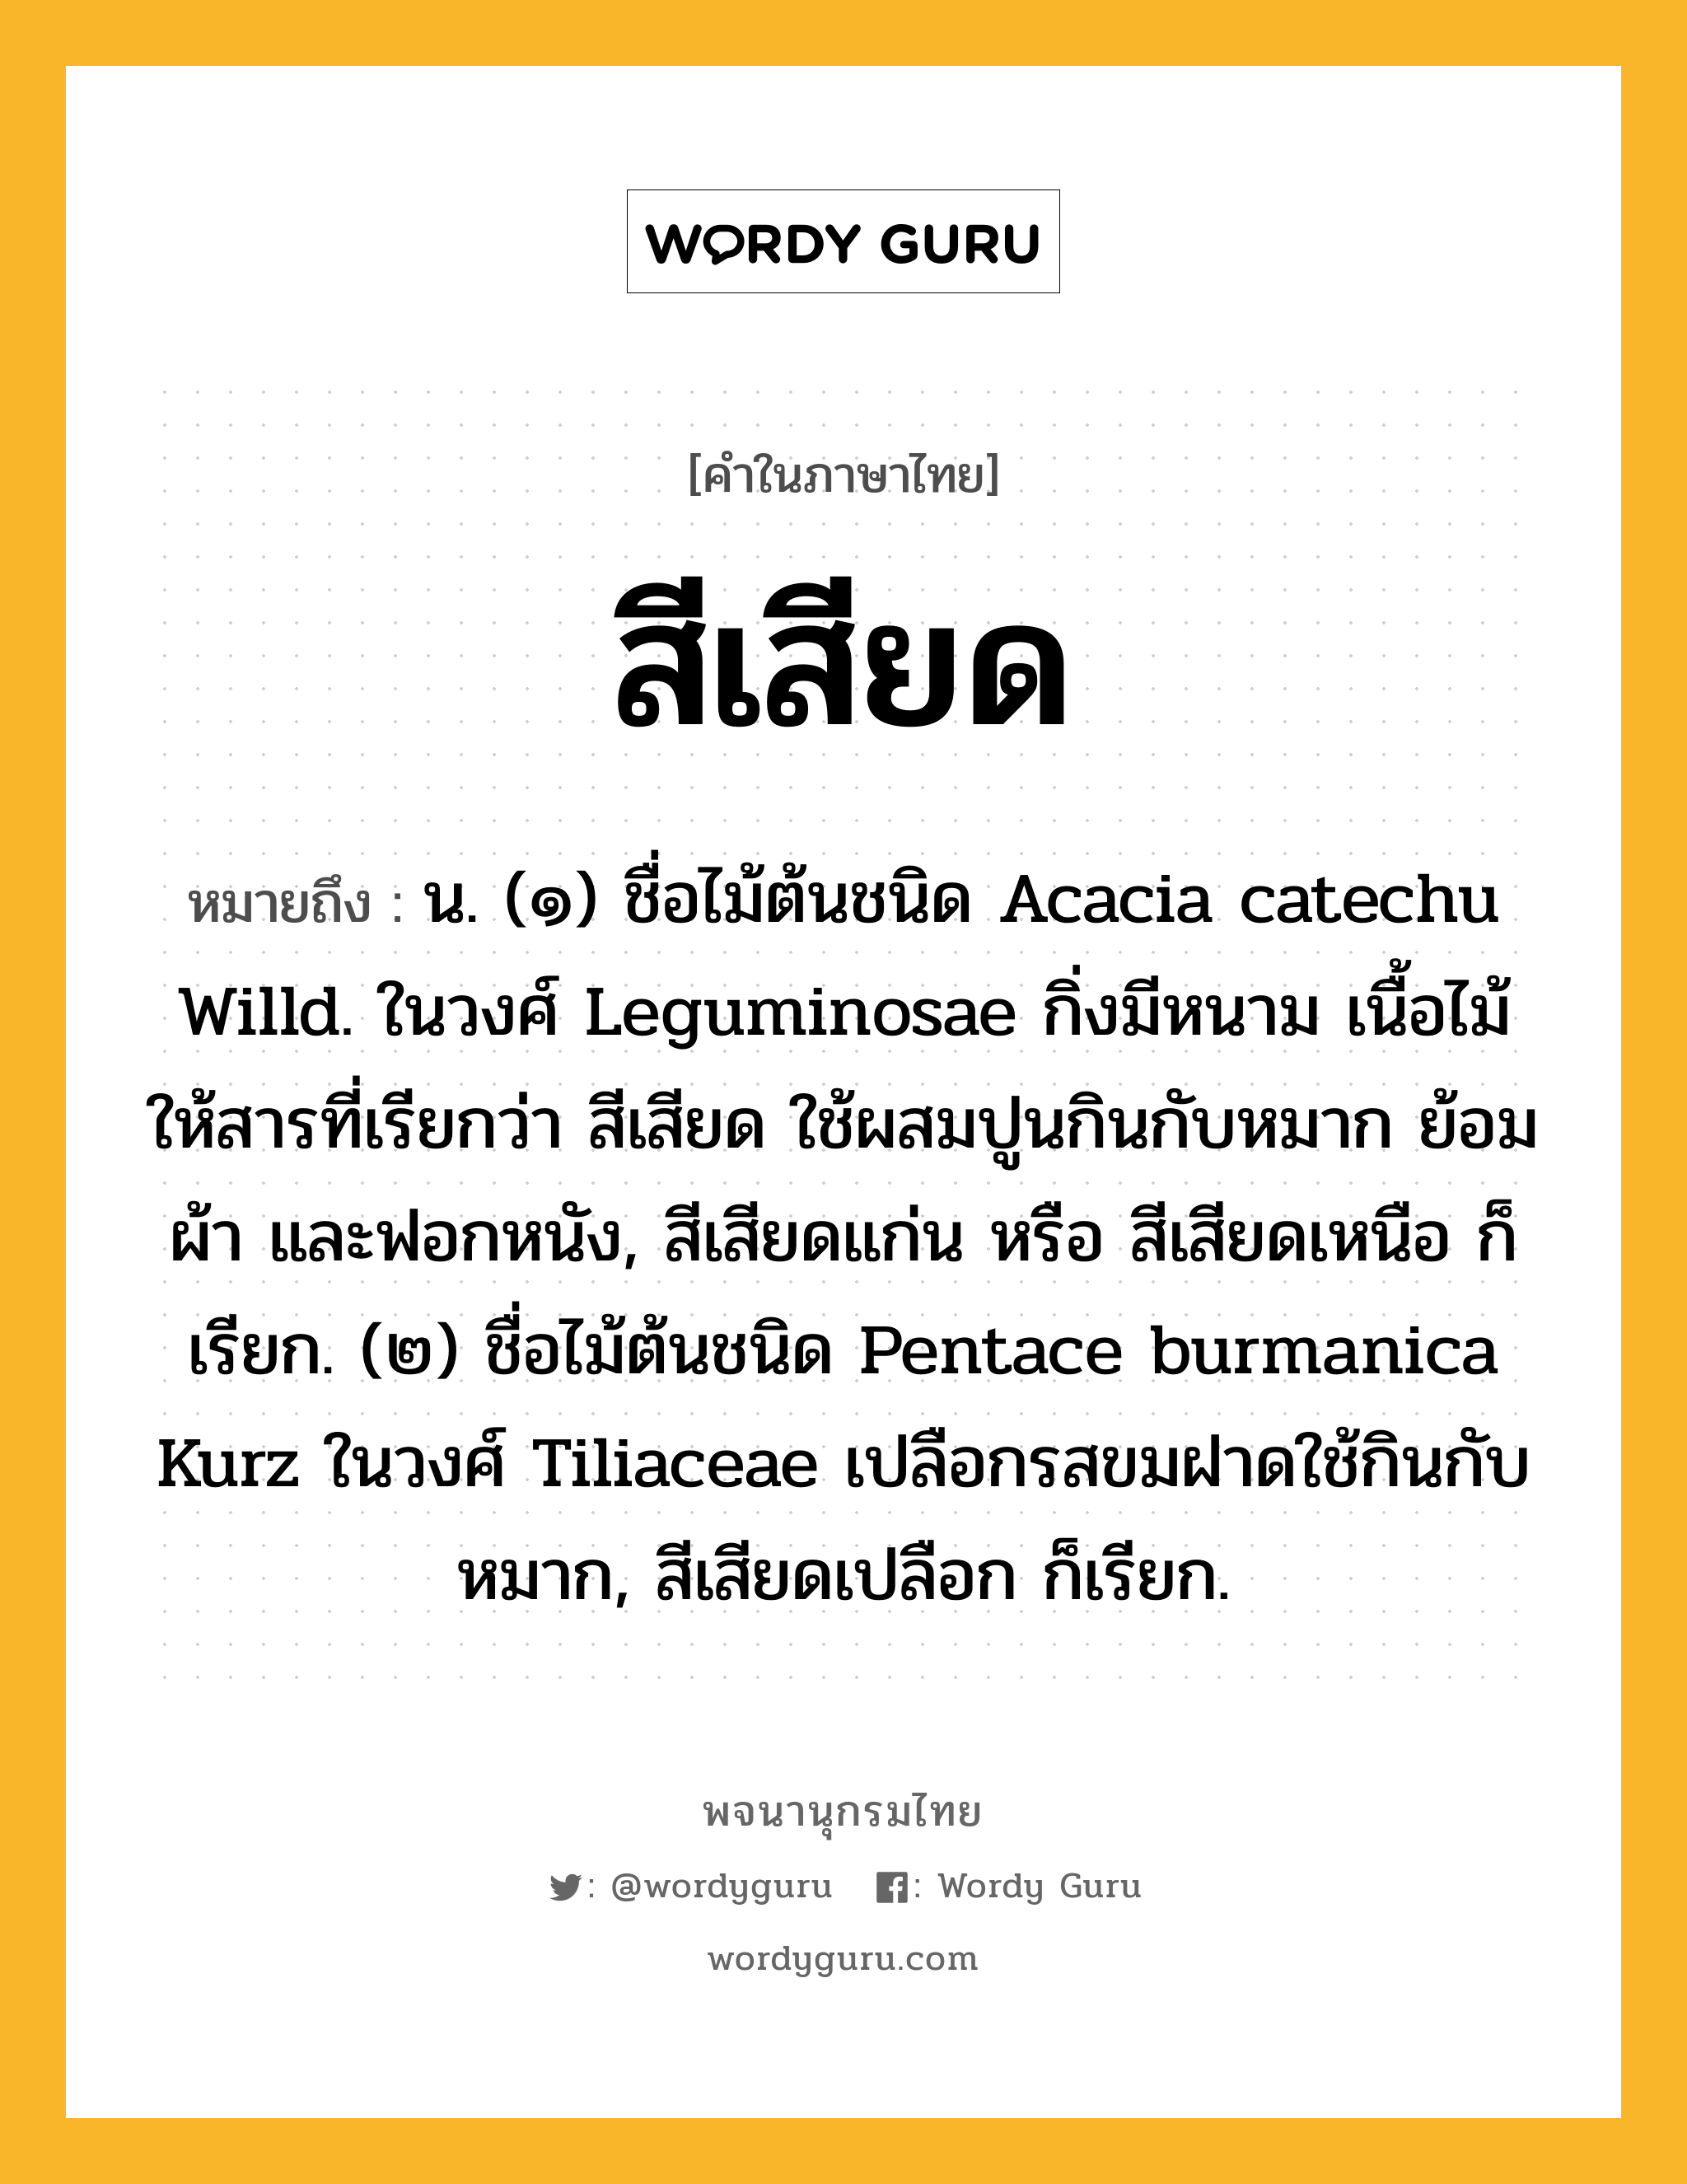 สีเสียด ความหมาย หมายถึงอะไร?, คำในภาษาไทย สีเสียด หมายถึง น. (๑) ชื่อไม้ต้นชนิด Acacia catechu Willd. ในวงศ์ Leguminosae กิ่งมีหนาม เนื้อไม้ให้สารที่เรียกว่า สีเสียด ใช้ผสมปูนกินกับหมาก ย้อมผ้า และฟอกหนัง, สีเสียดแก่น หรือ สีเสียดเหนือ ก็เรียก. (๒) ชื่อไม้ต้นชนิด Pentace burmanica Kurz ในวงศ์ Tiliaceae เปลือกรสขมฝาดใช้กินกับหมาก, สีเสียดเปลือก ก็เรียก.